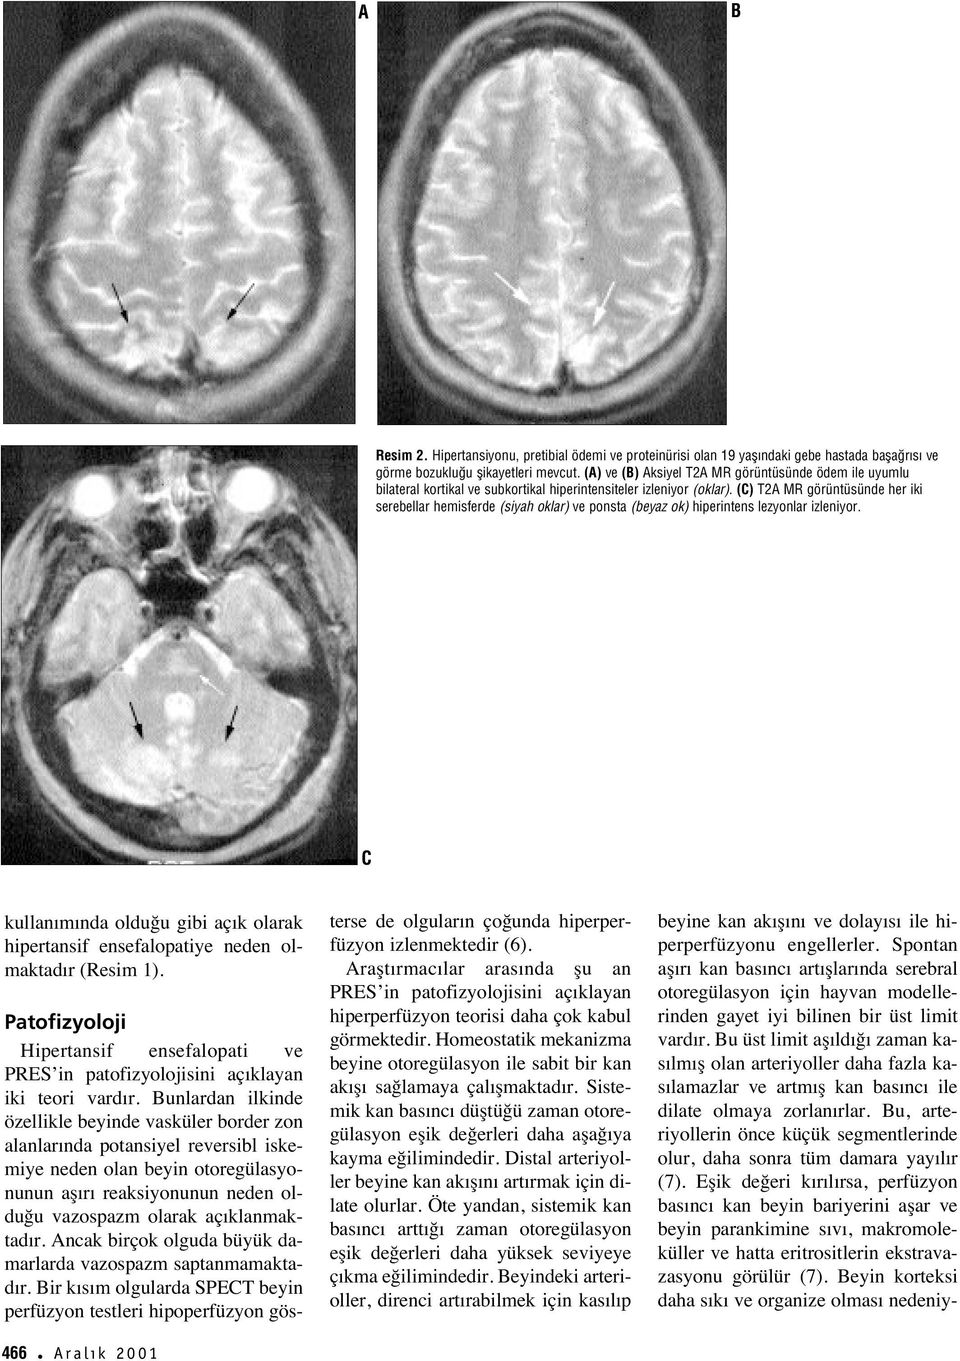 () T2A MR görüntüsünde her iki serebellar hemisferde (siyah oklar) ve ponsta (beyaz ok) hiperintens lezyonlar izleniyor.